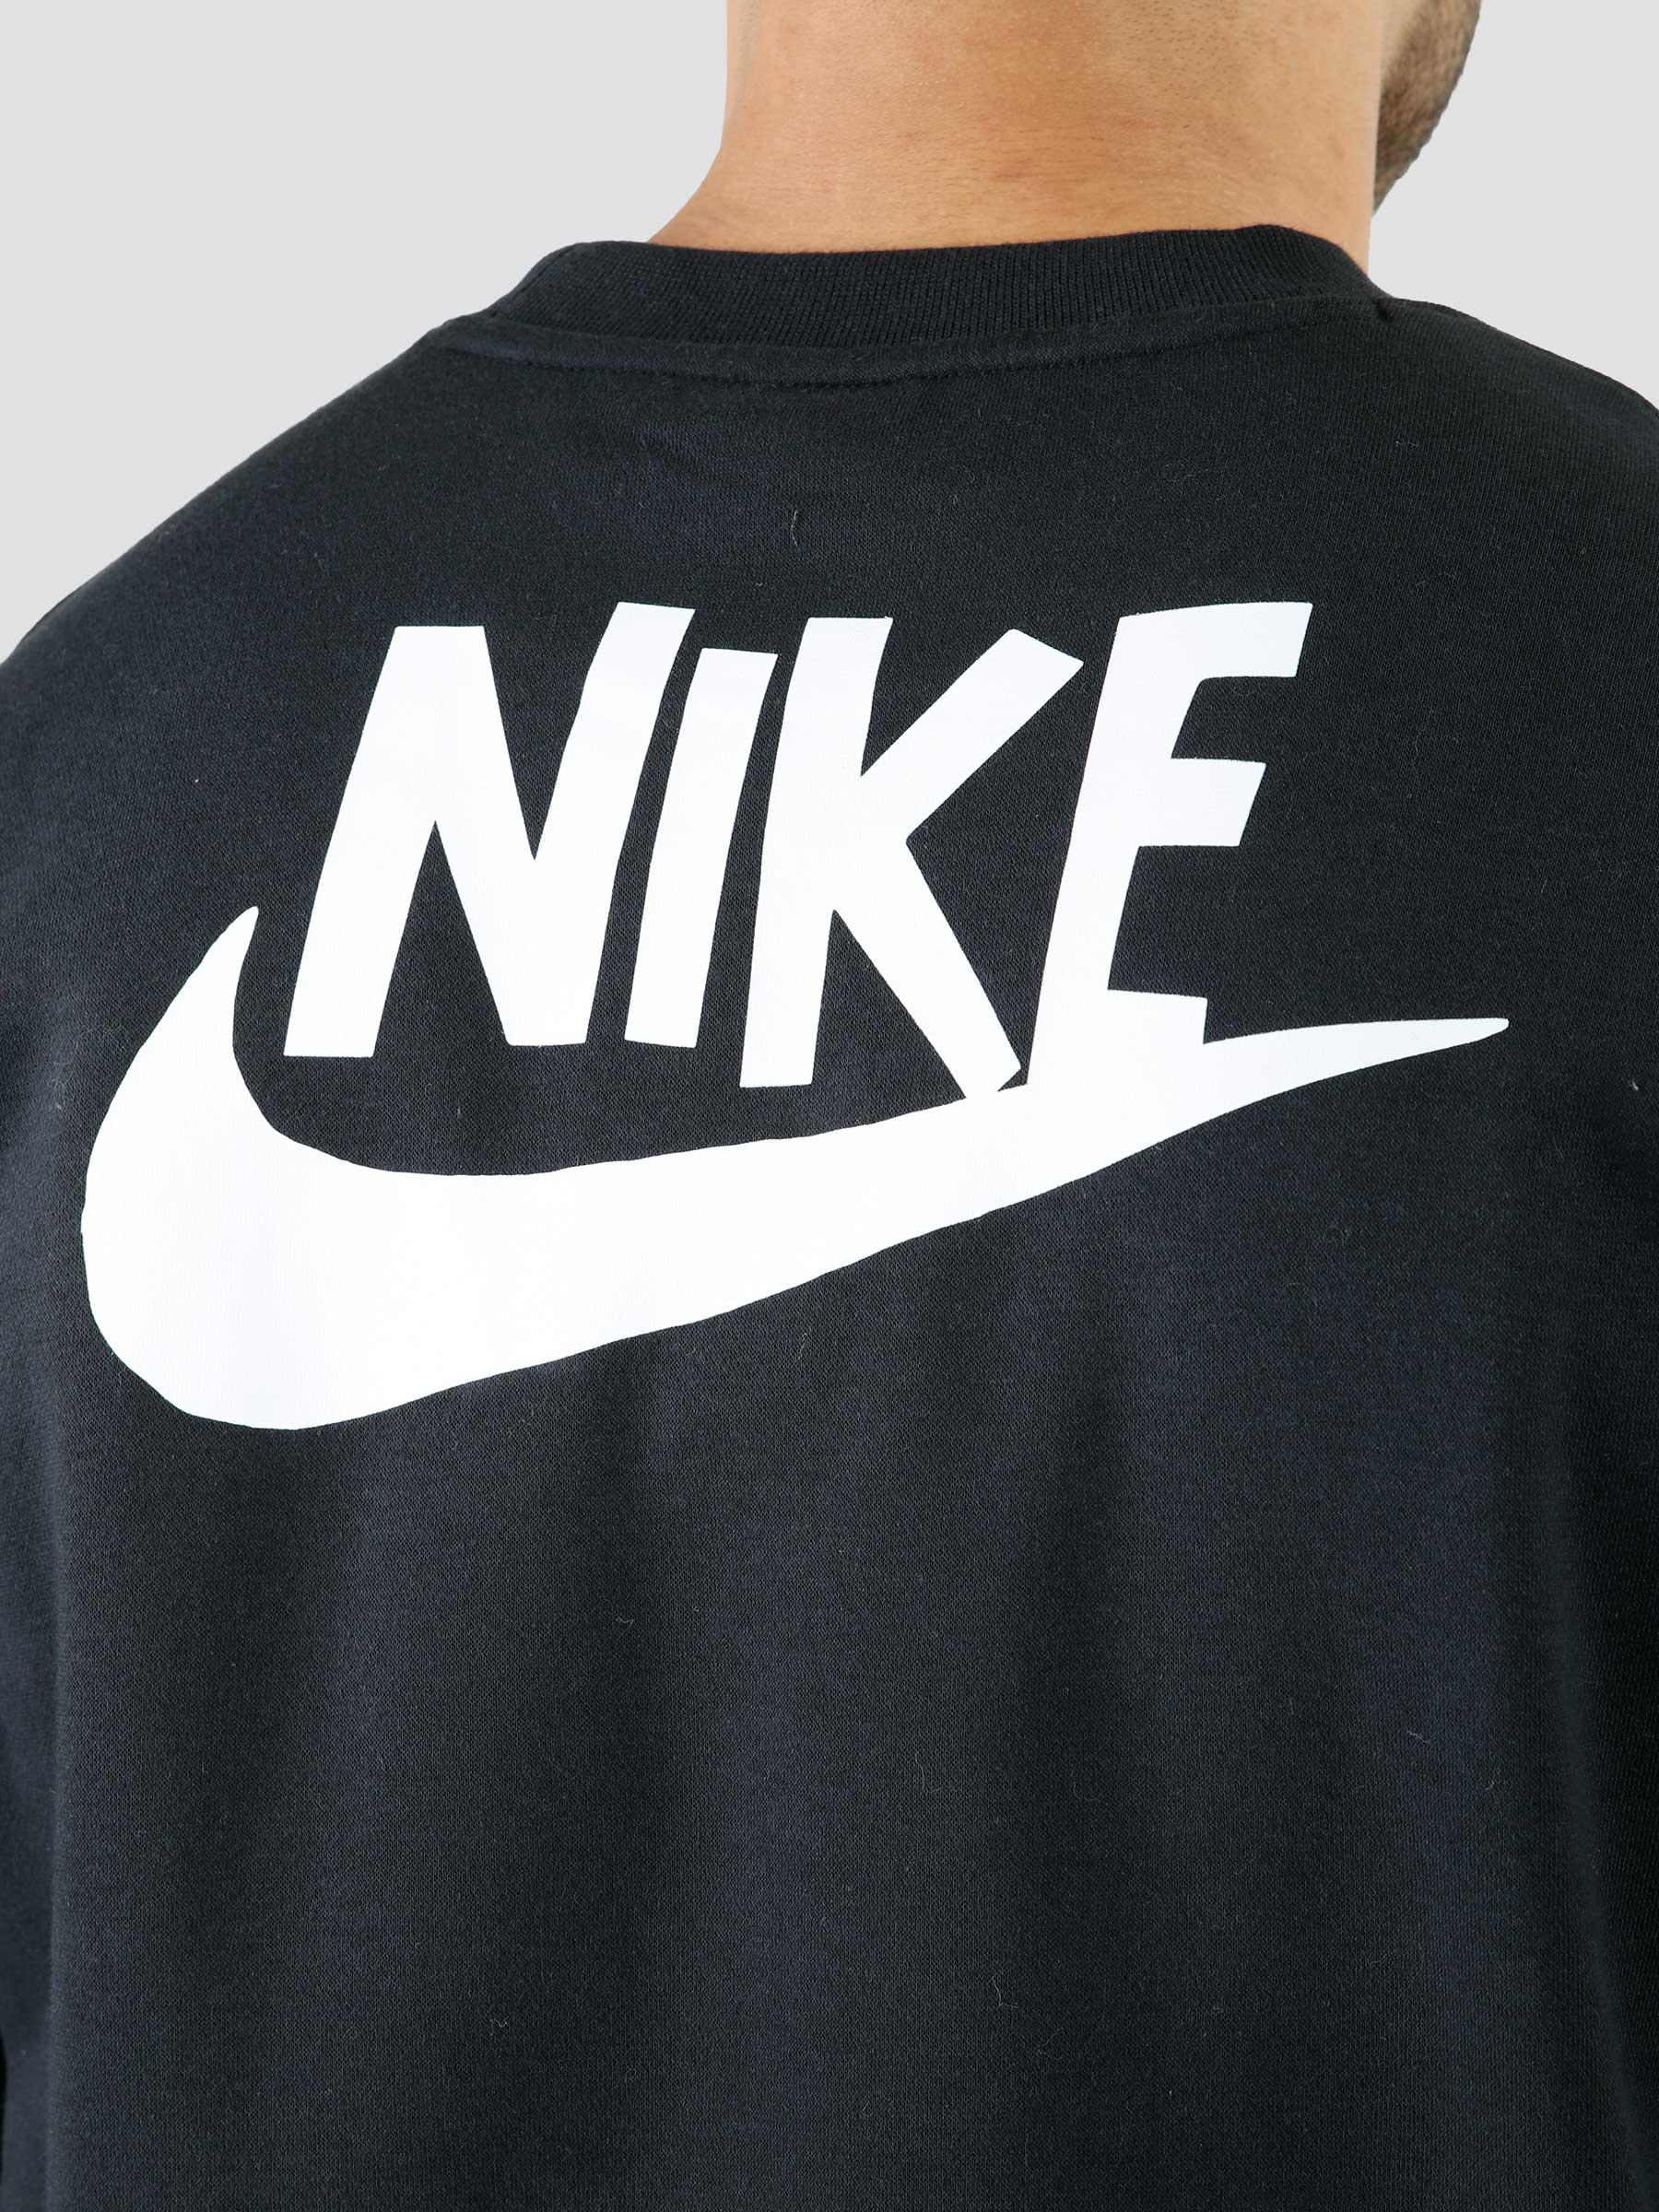 Nike Sportswear Black White - Freshcotton